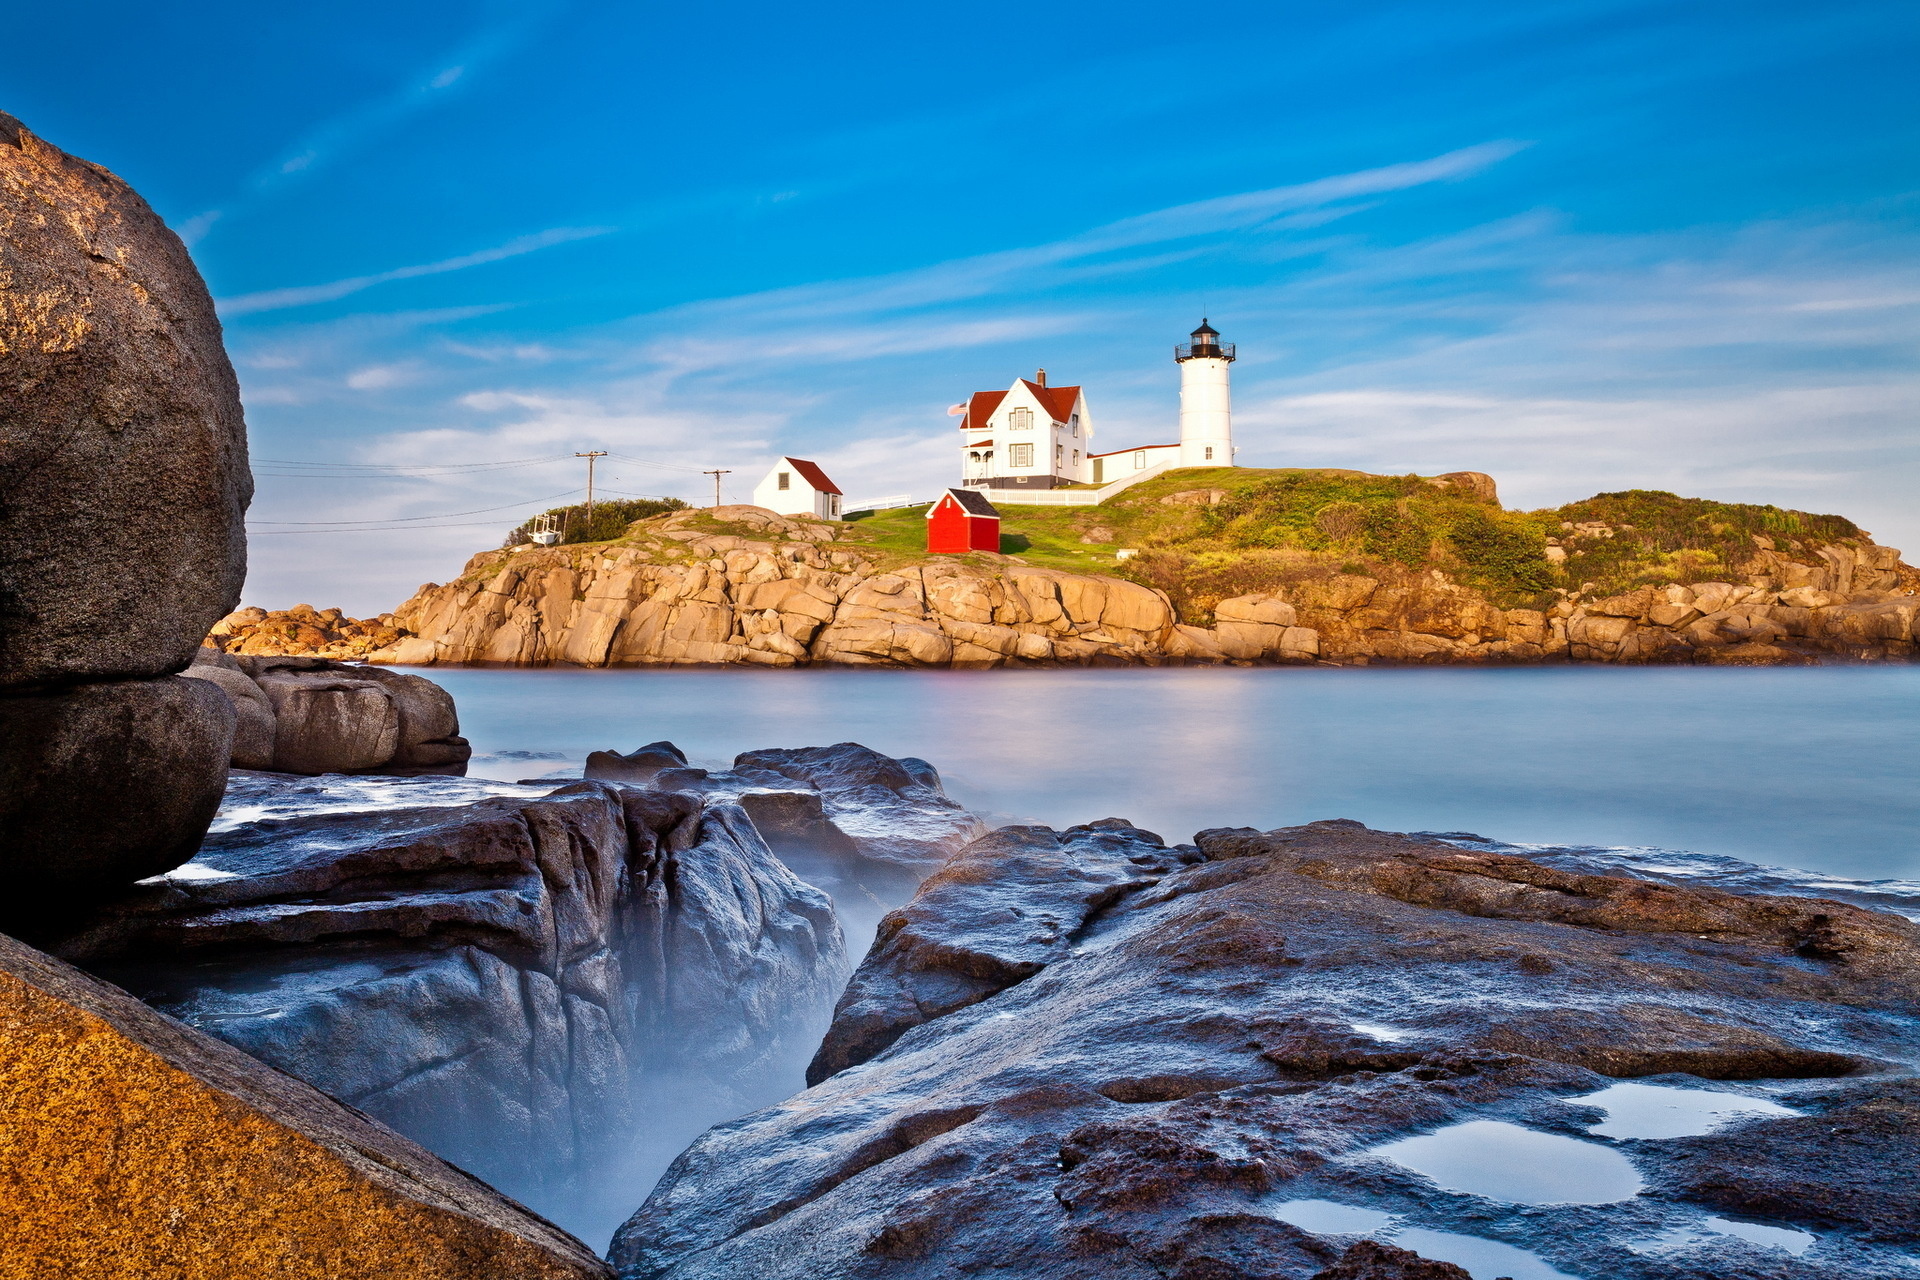  Lighthouse   York Maine by Alexander Palasek   Desktop Wallpaper